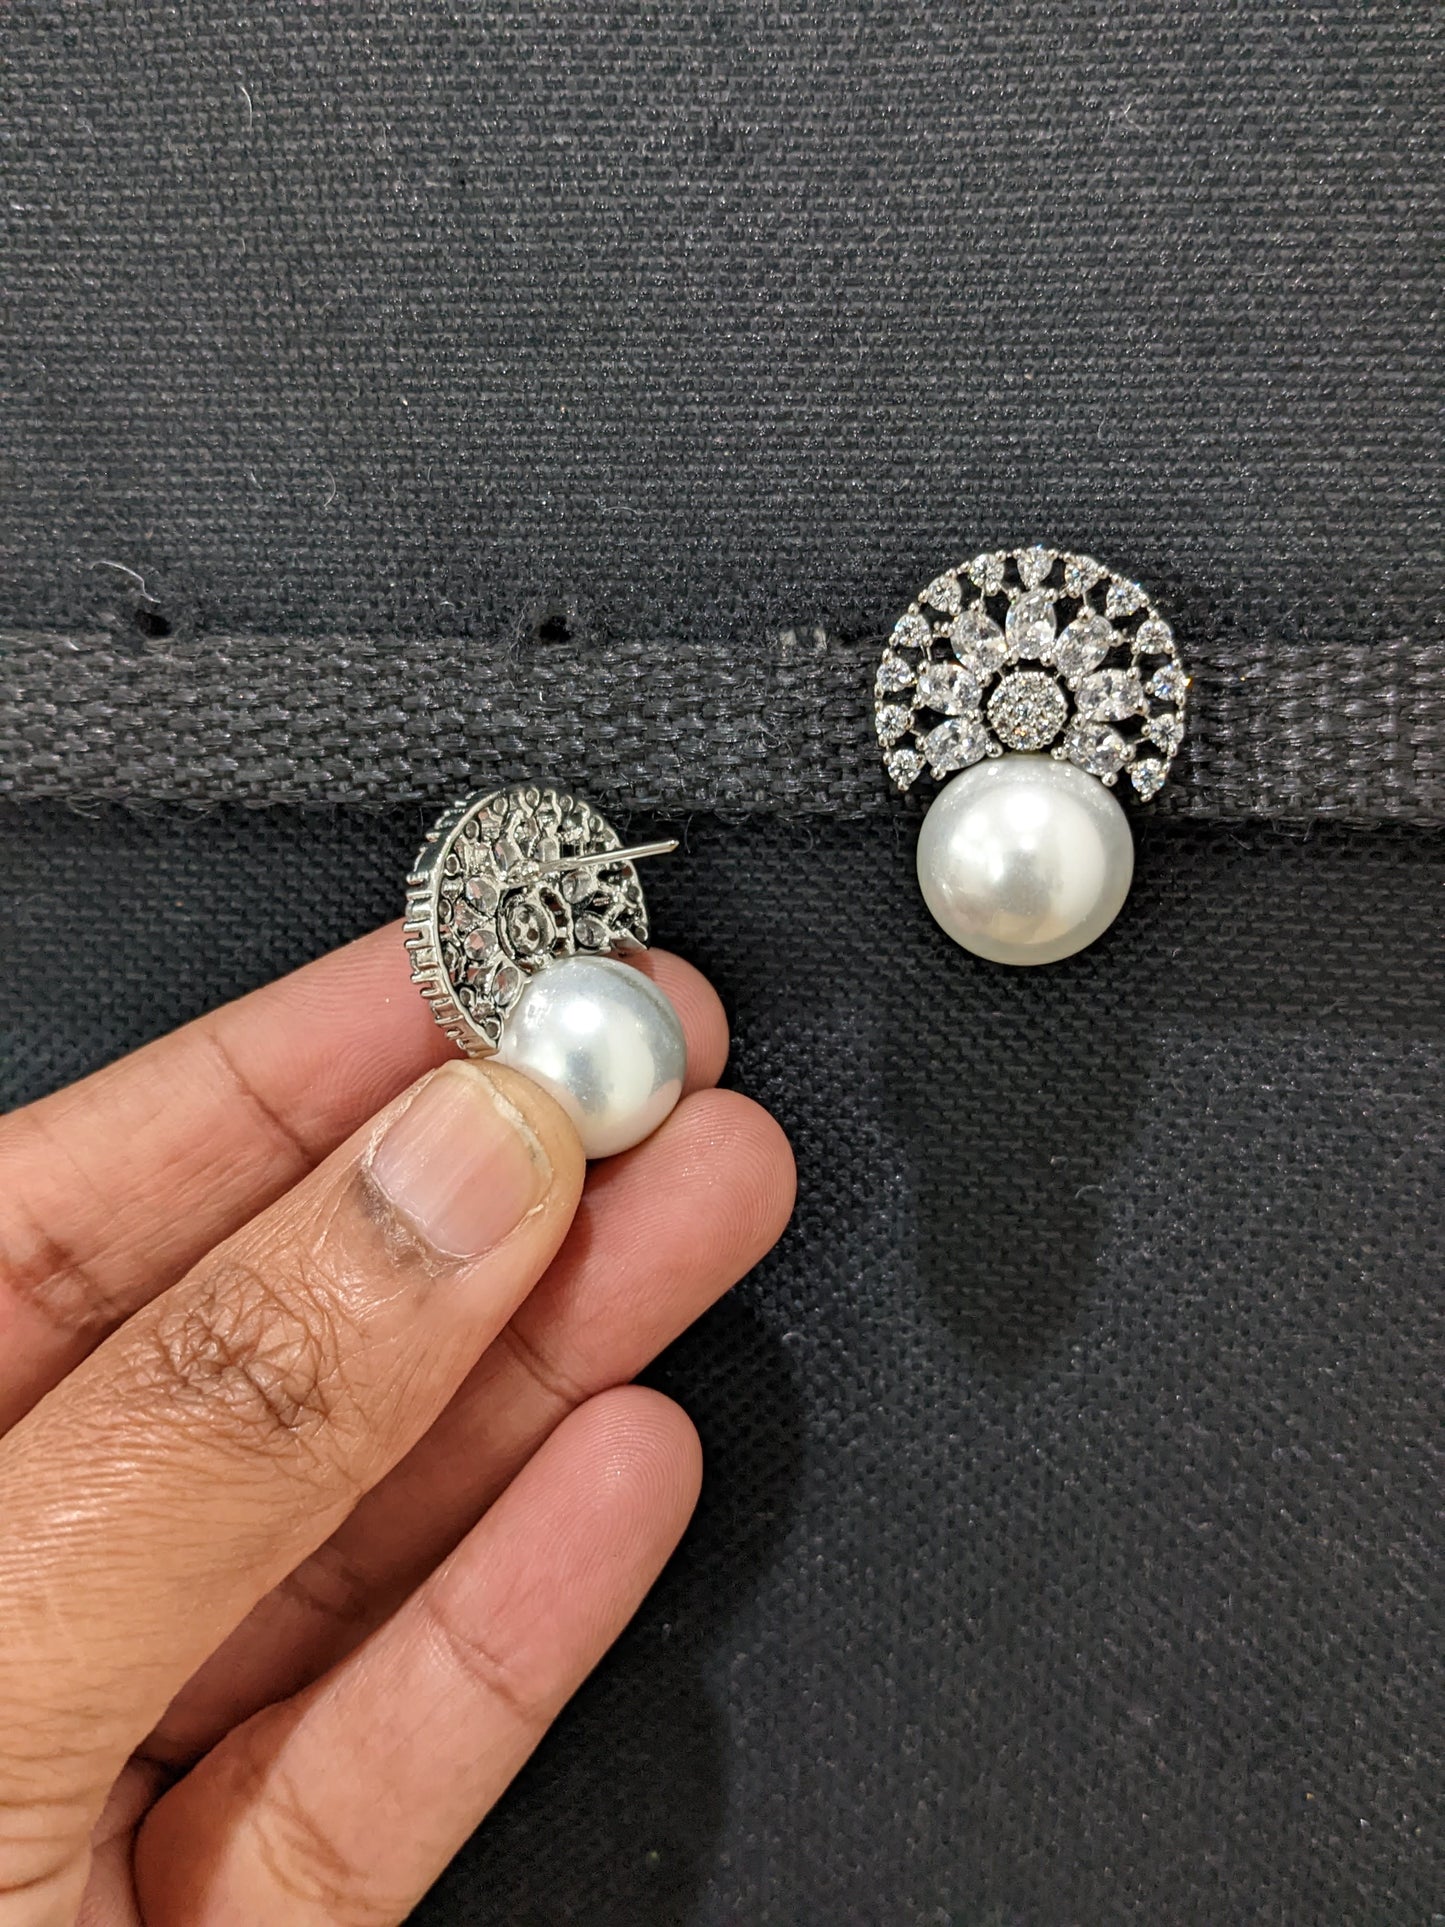 White CZ Faux Pearl Stud Earrings